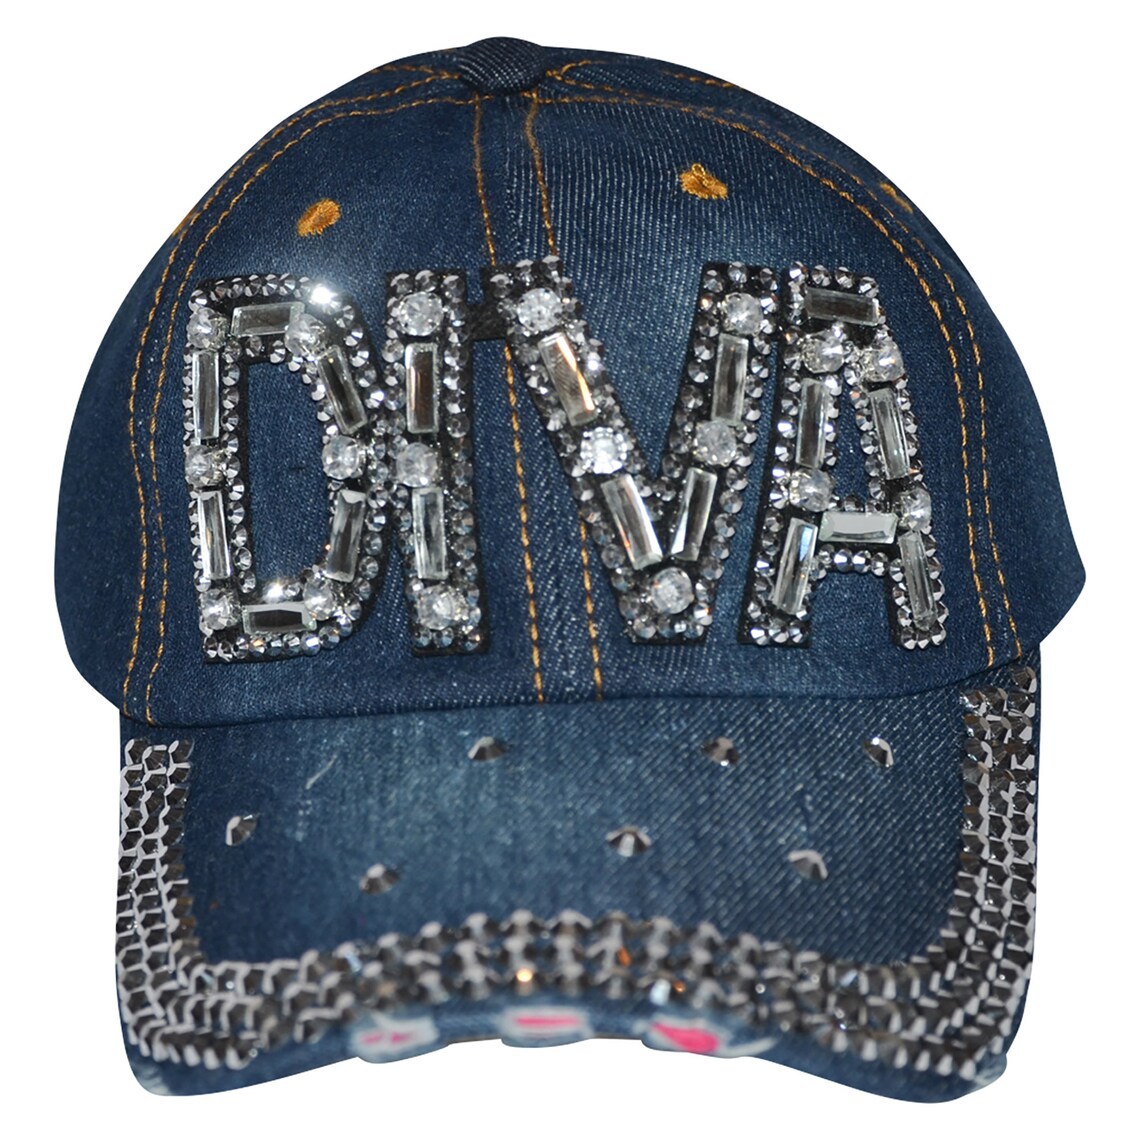 Diva hat bling cap for women sparkle rhinestone denim cute | Etsy